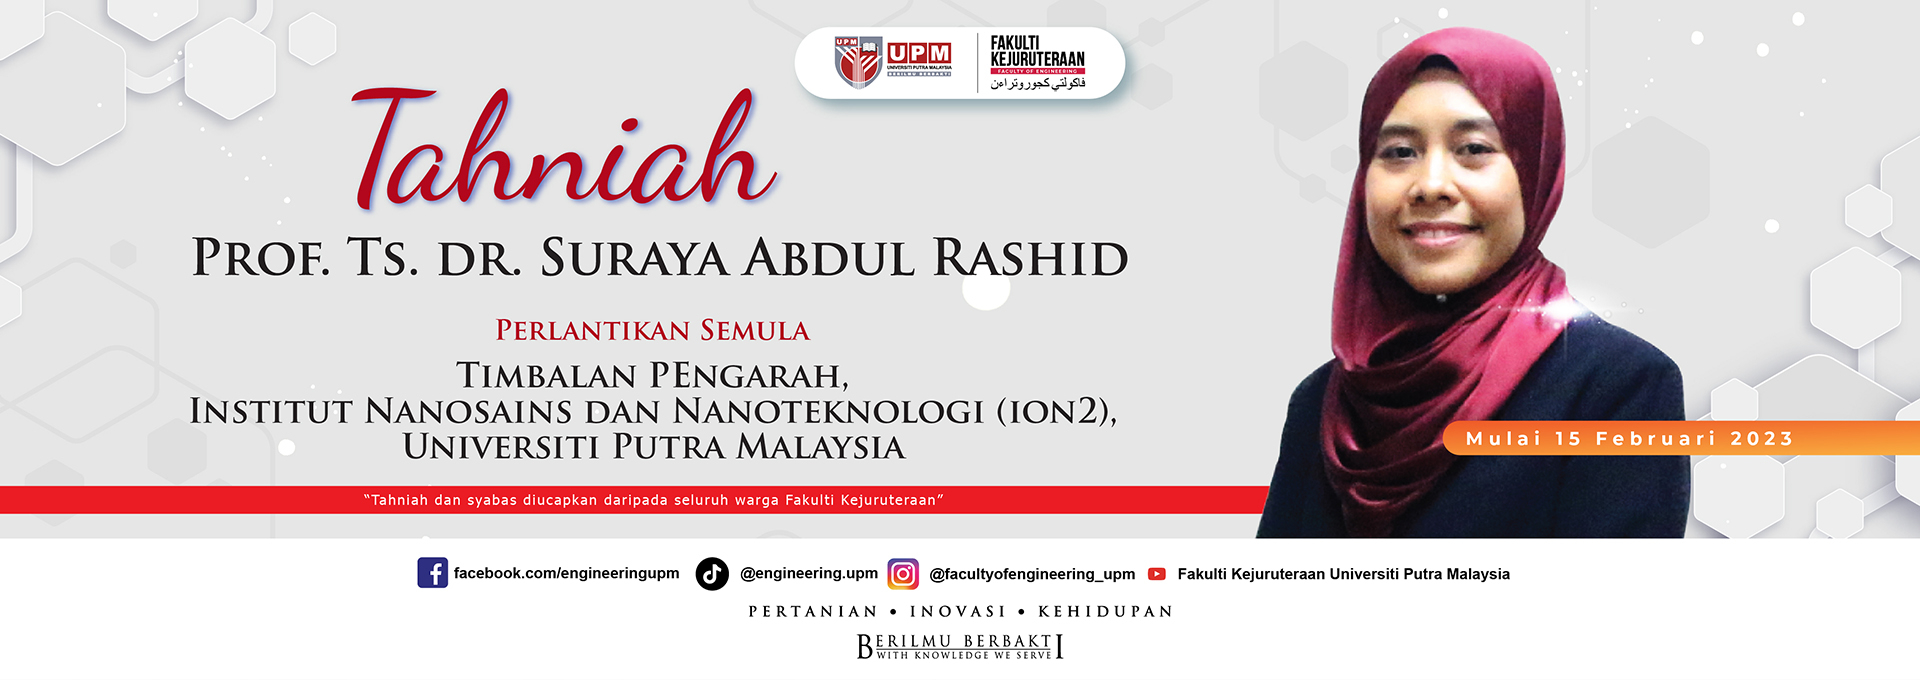 Prof. Ts. dr. Suraya Abdul Rashid